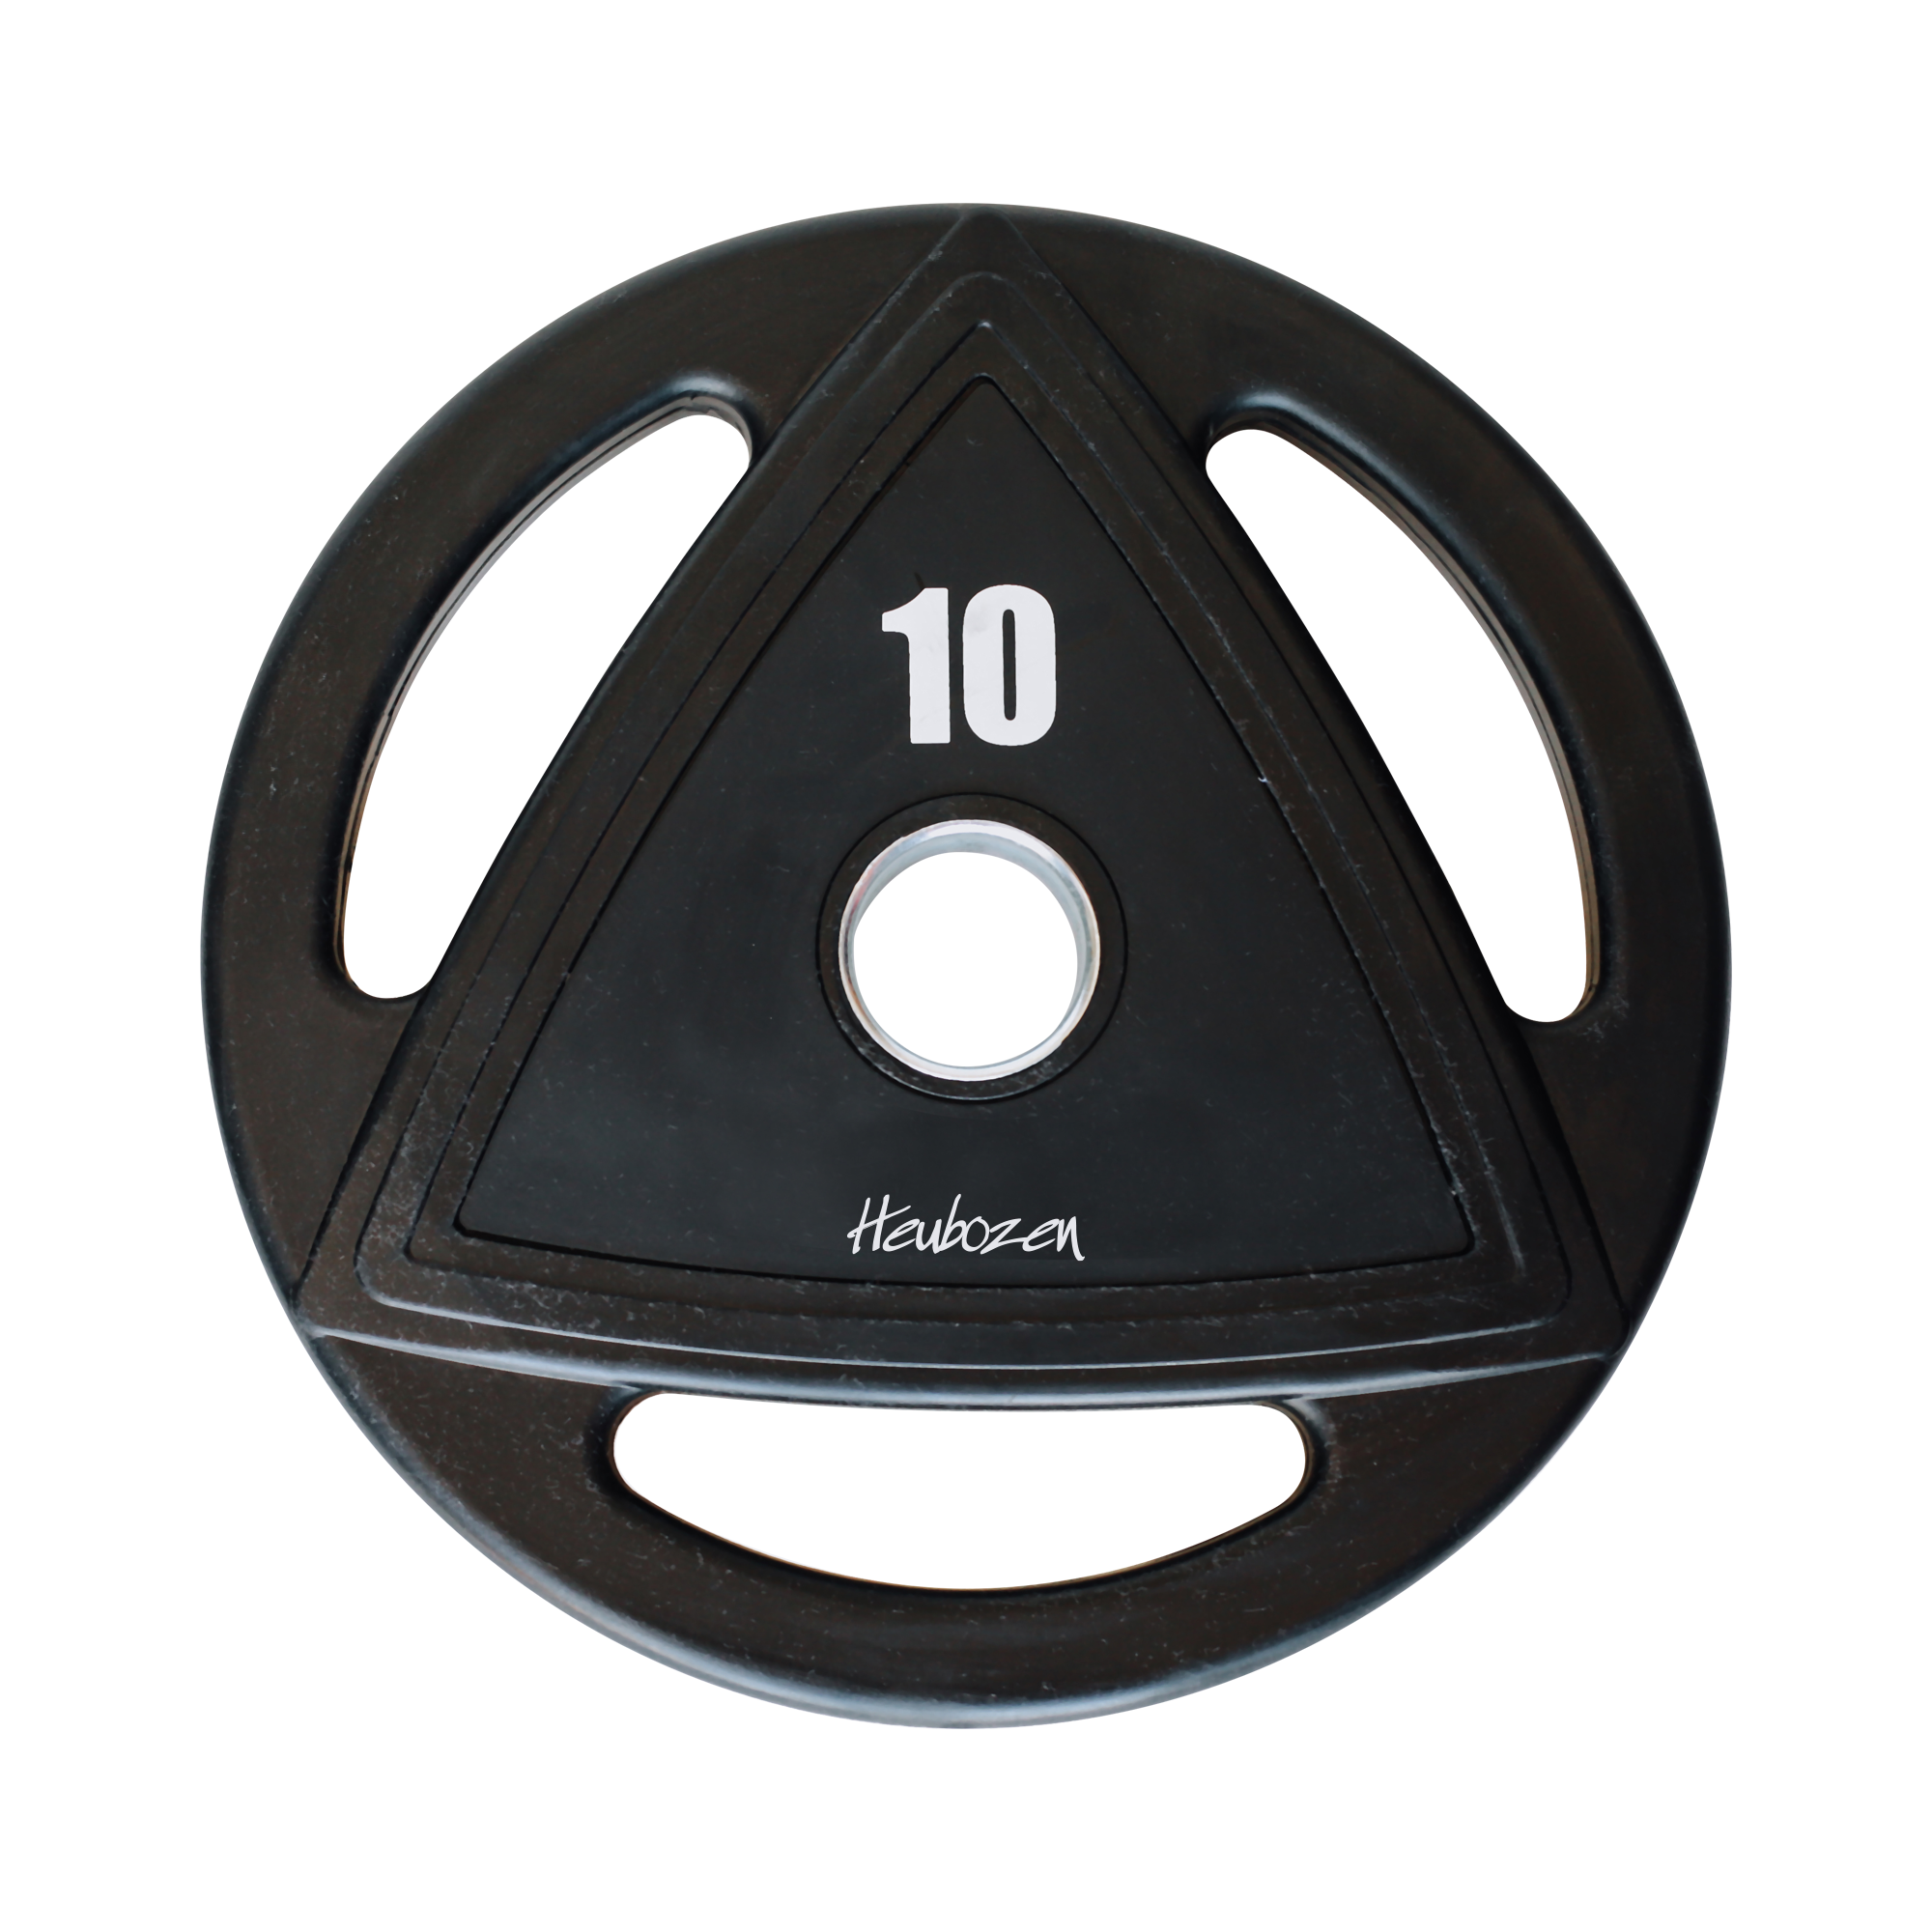 Disque Olympique - Diamètre 51mm Heubozen Disque caoutchouc olympique Noir